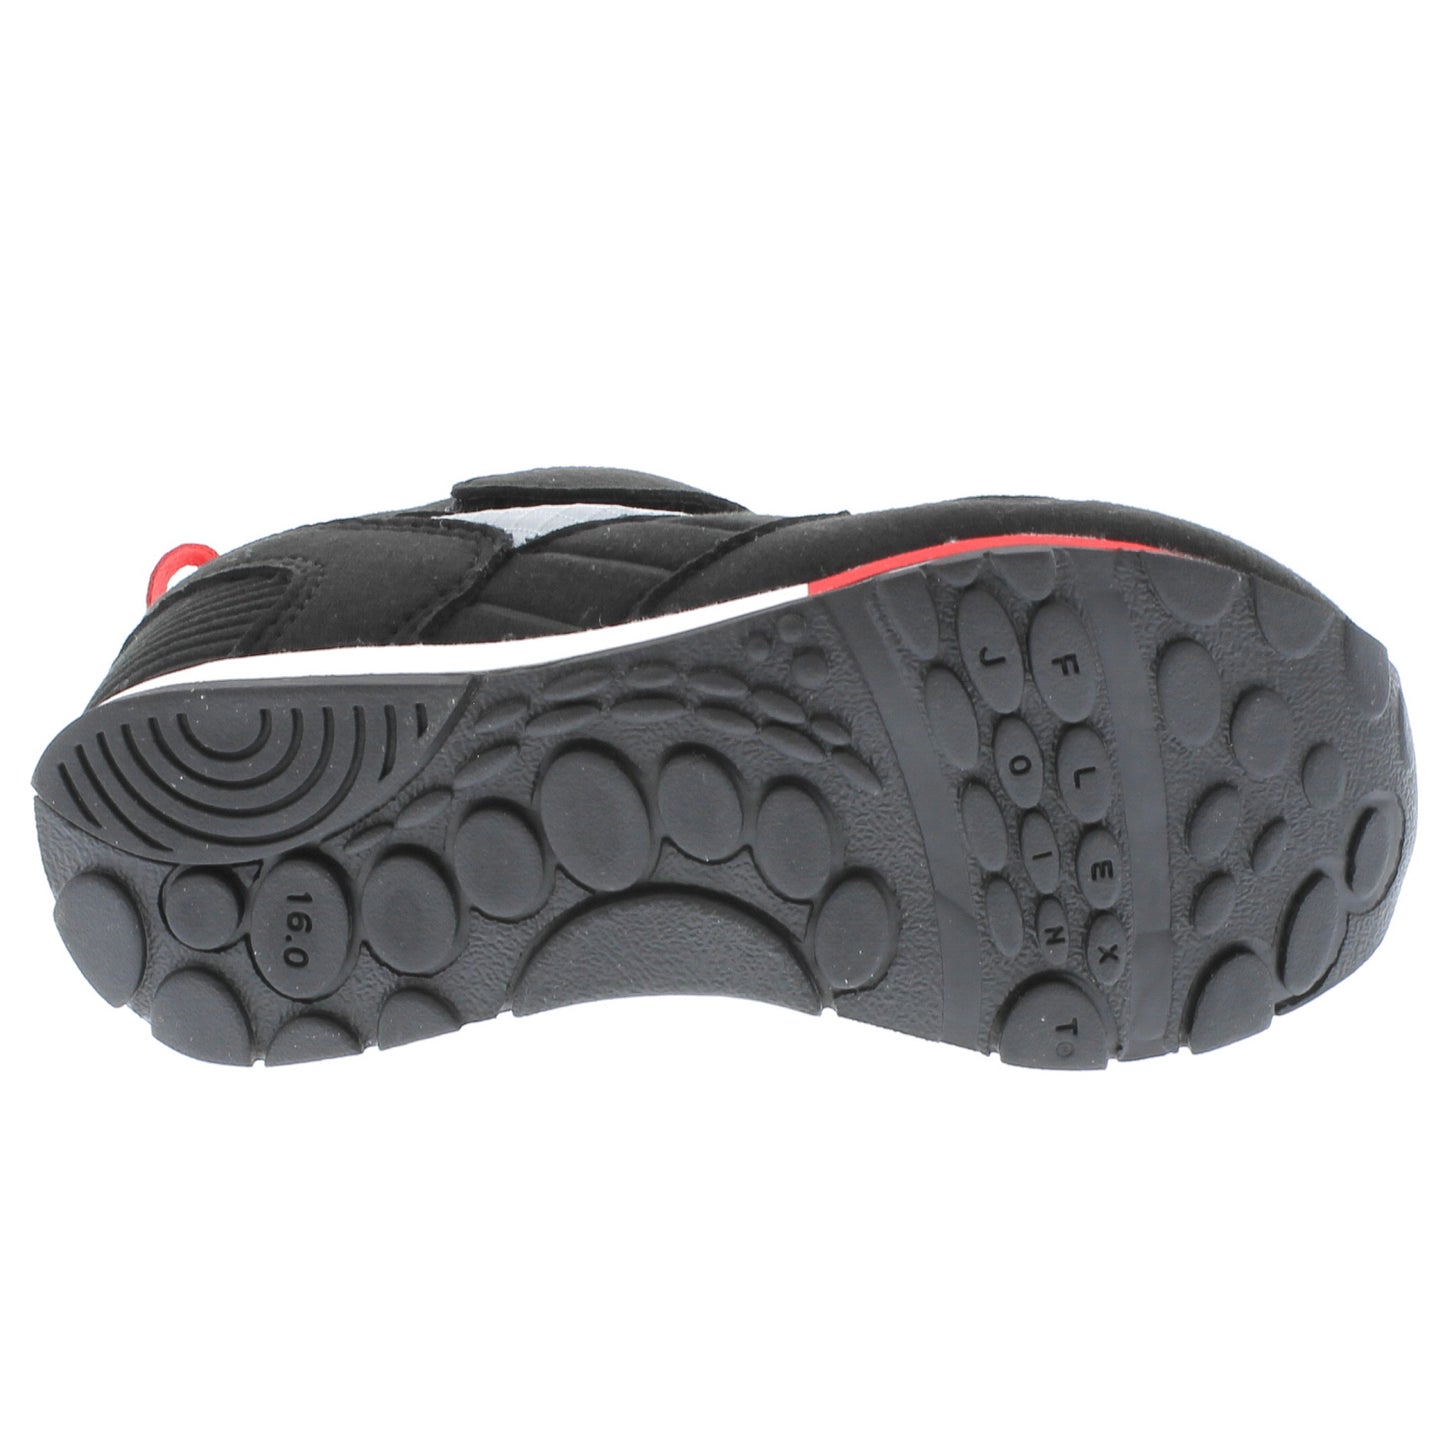 Racer Sneaker - Black/Red